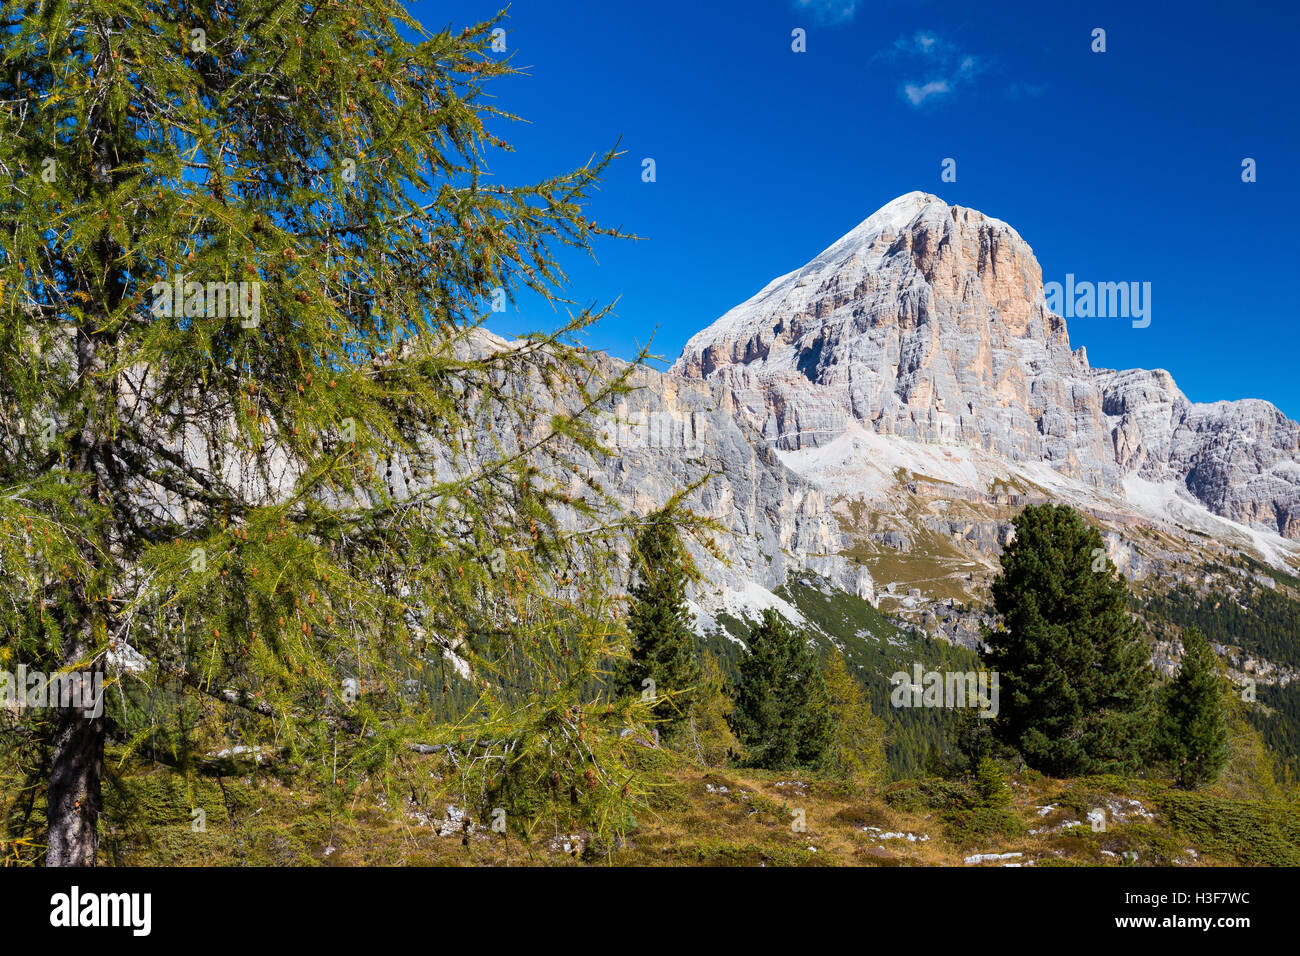 Autumn season in the Ampezzo Dolomites. Larches forest. Tofana di Rozes mountain peak. Passo Falzarego. Dolomiti. Italian Alps. Europe. Stock Photo